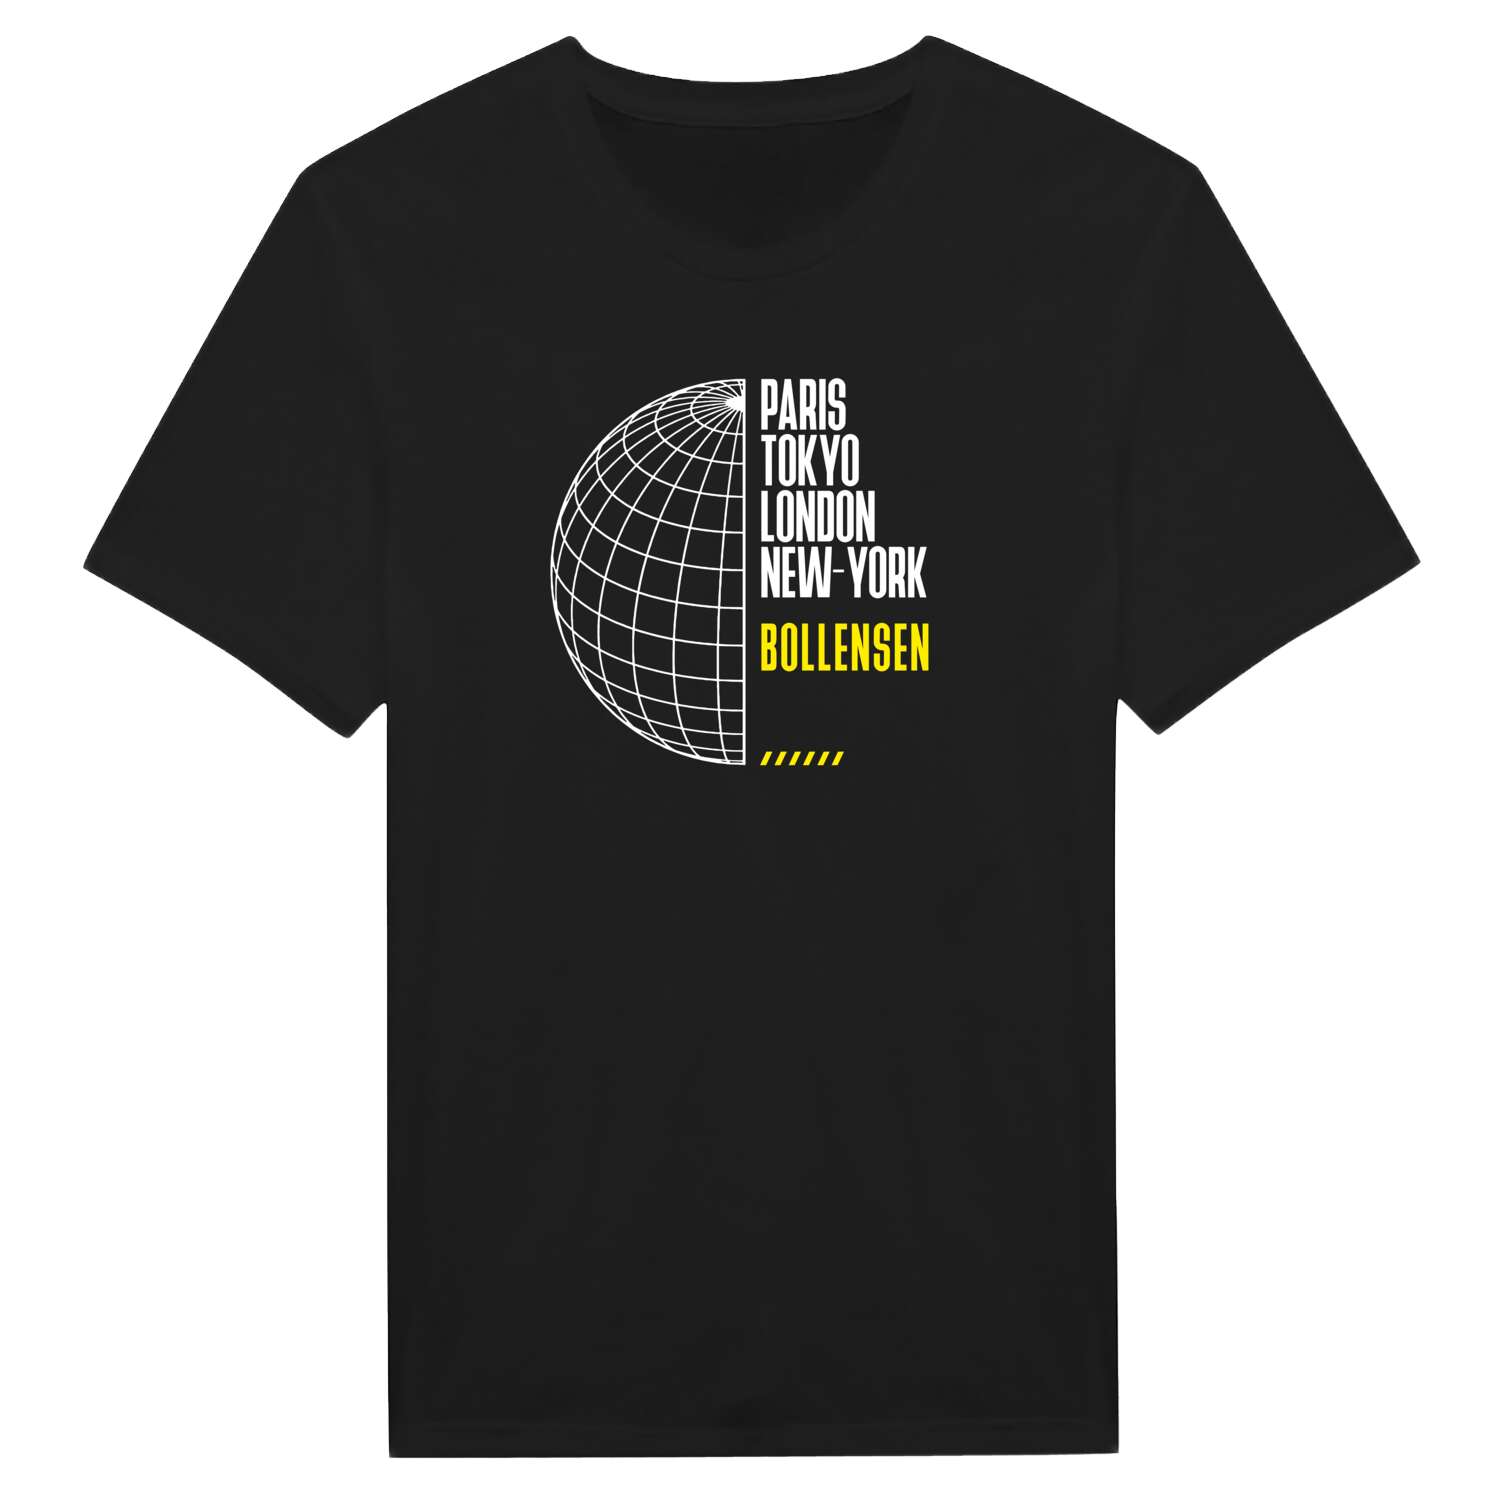 Bollensen T-Shirt »Paris Tokyo London«